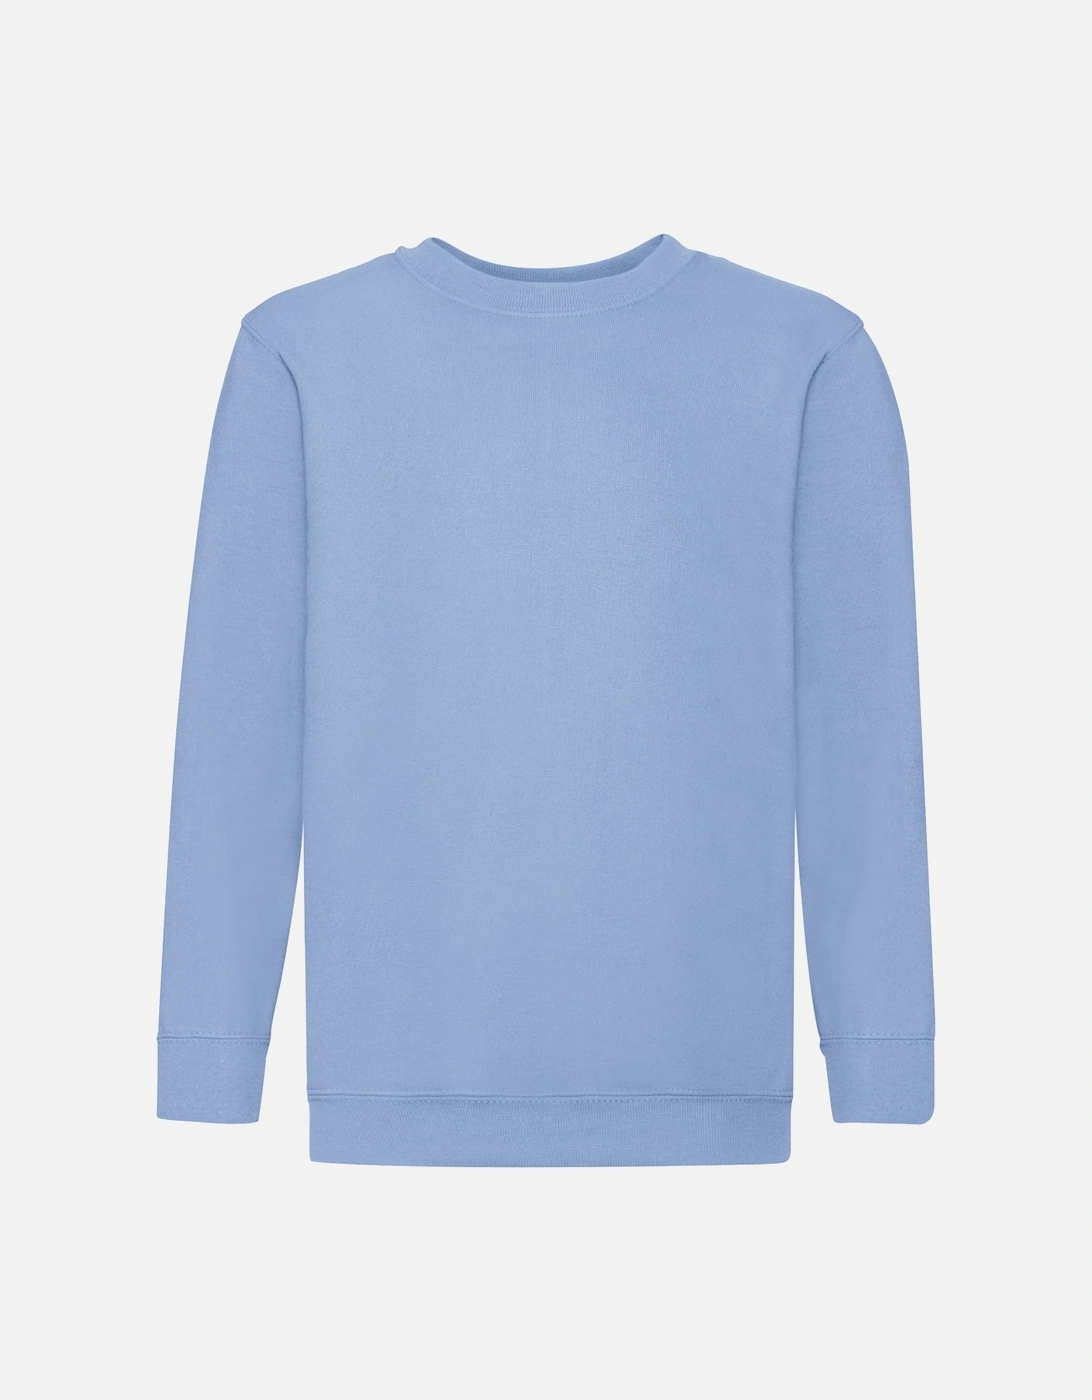 Childrens Unisex Set In Sleeve Sweatshirt (Pack of 2), 4 of 3